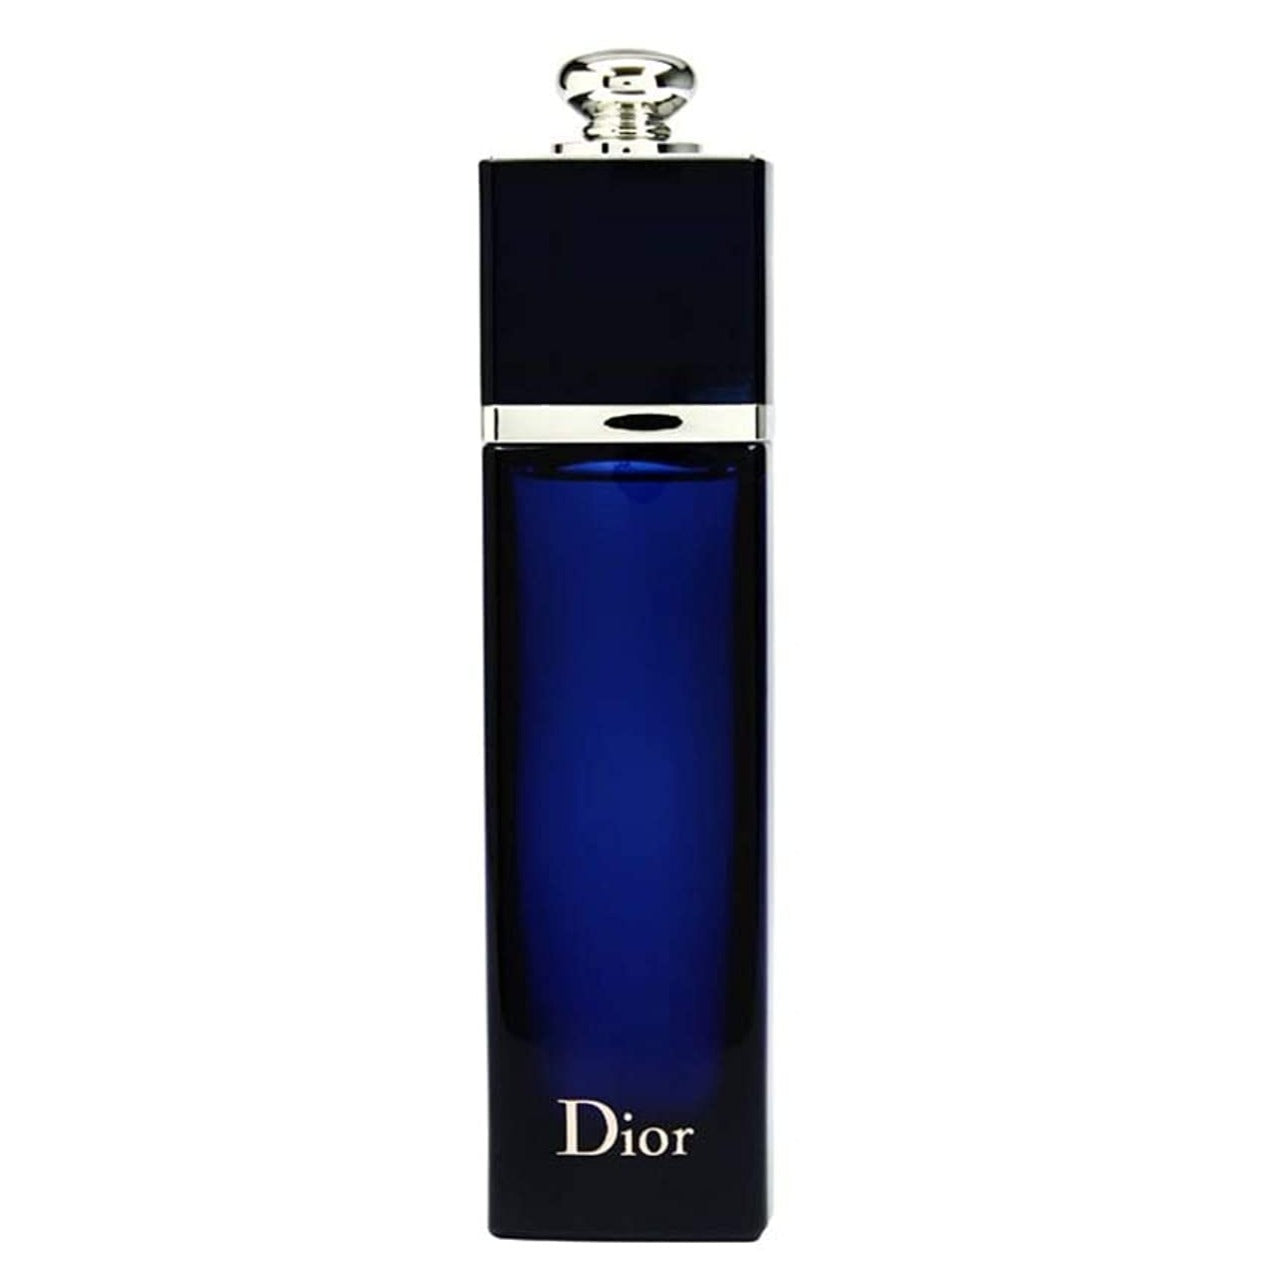 Dior Addict Eau de Parfum Spray for Women